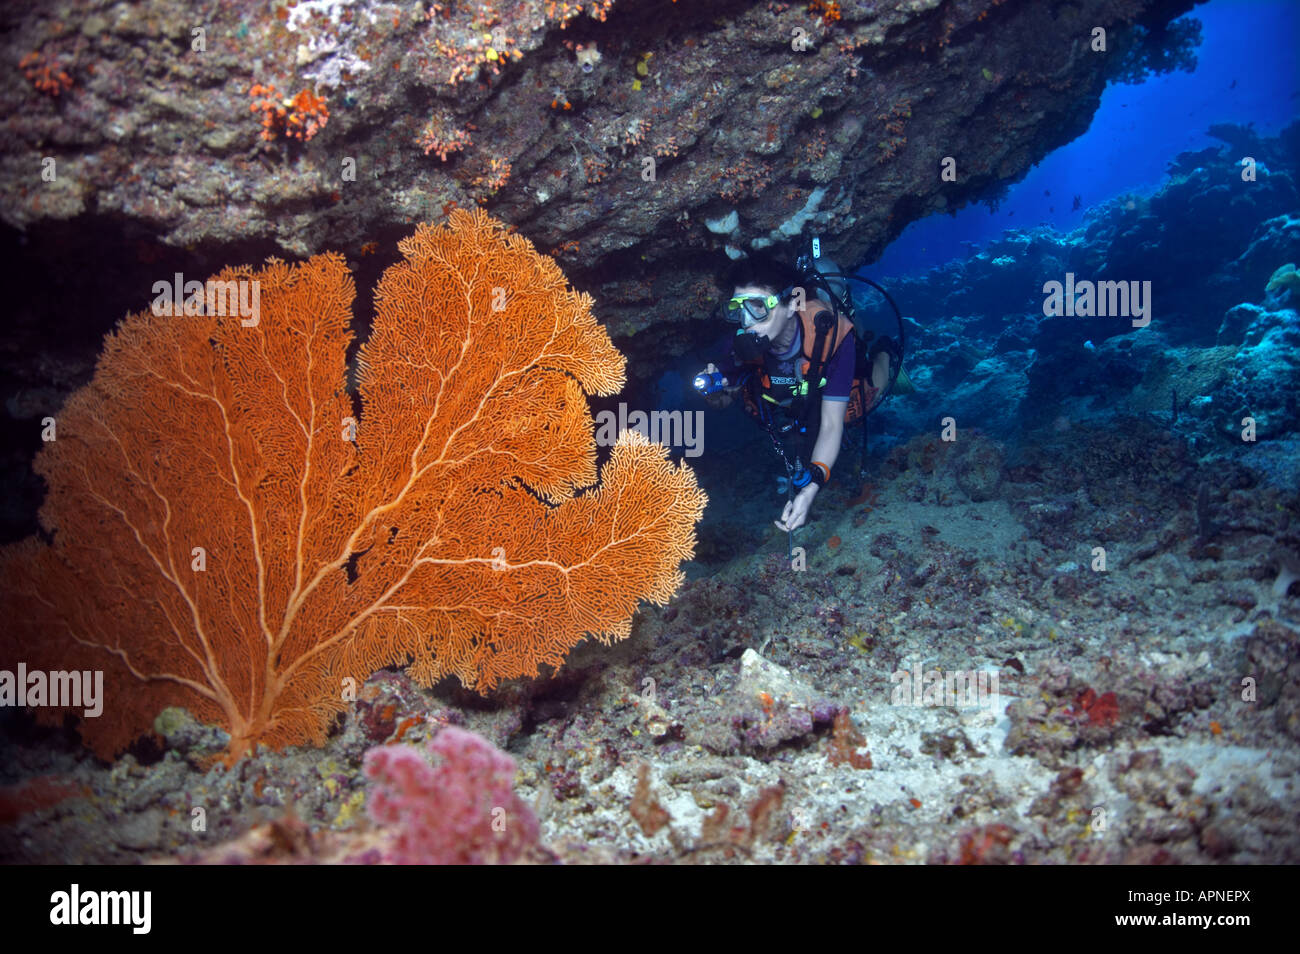 Eine Taucher erstrahlt ihre Fackel um die leuchtend orange Farbe der Gorgonien Fan Korallen auf Karumolun Island in den Salomonen verfügbar zu machen. Stockfoto